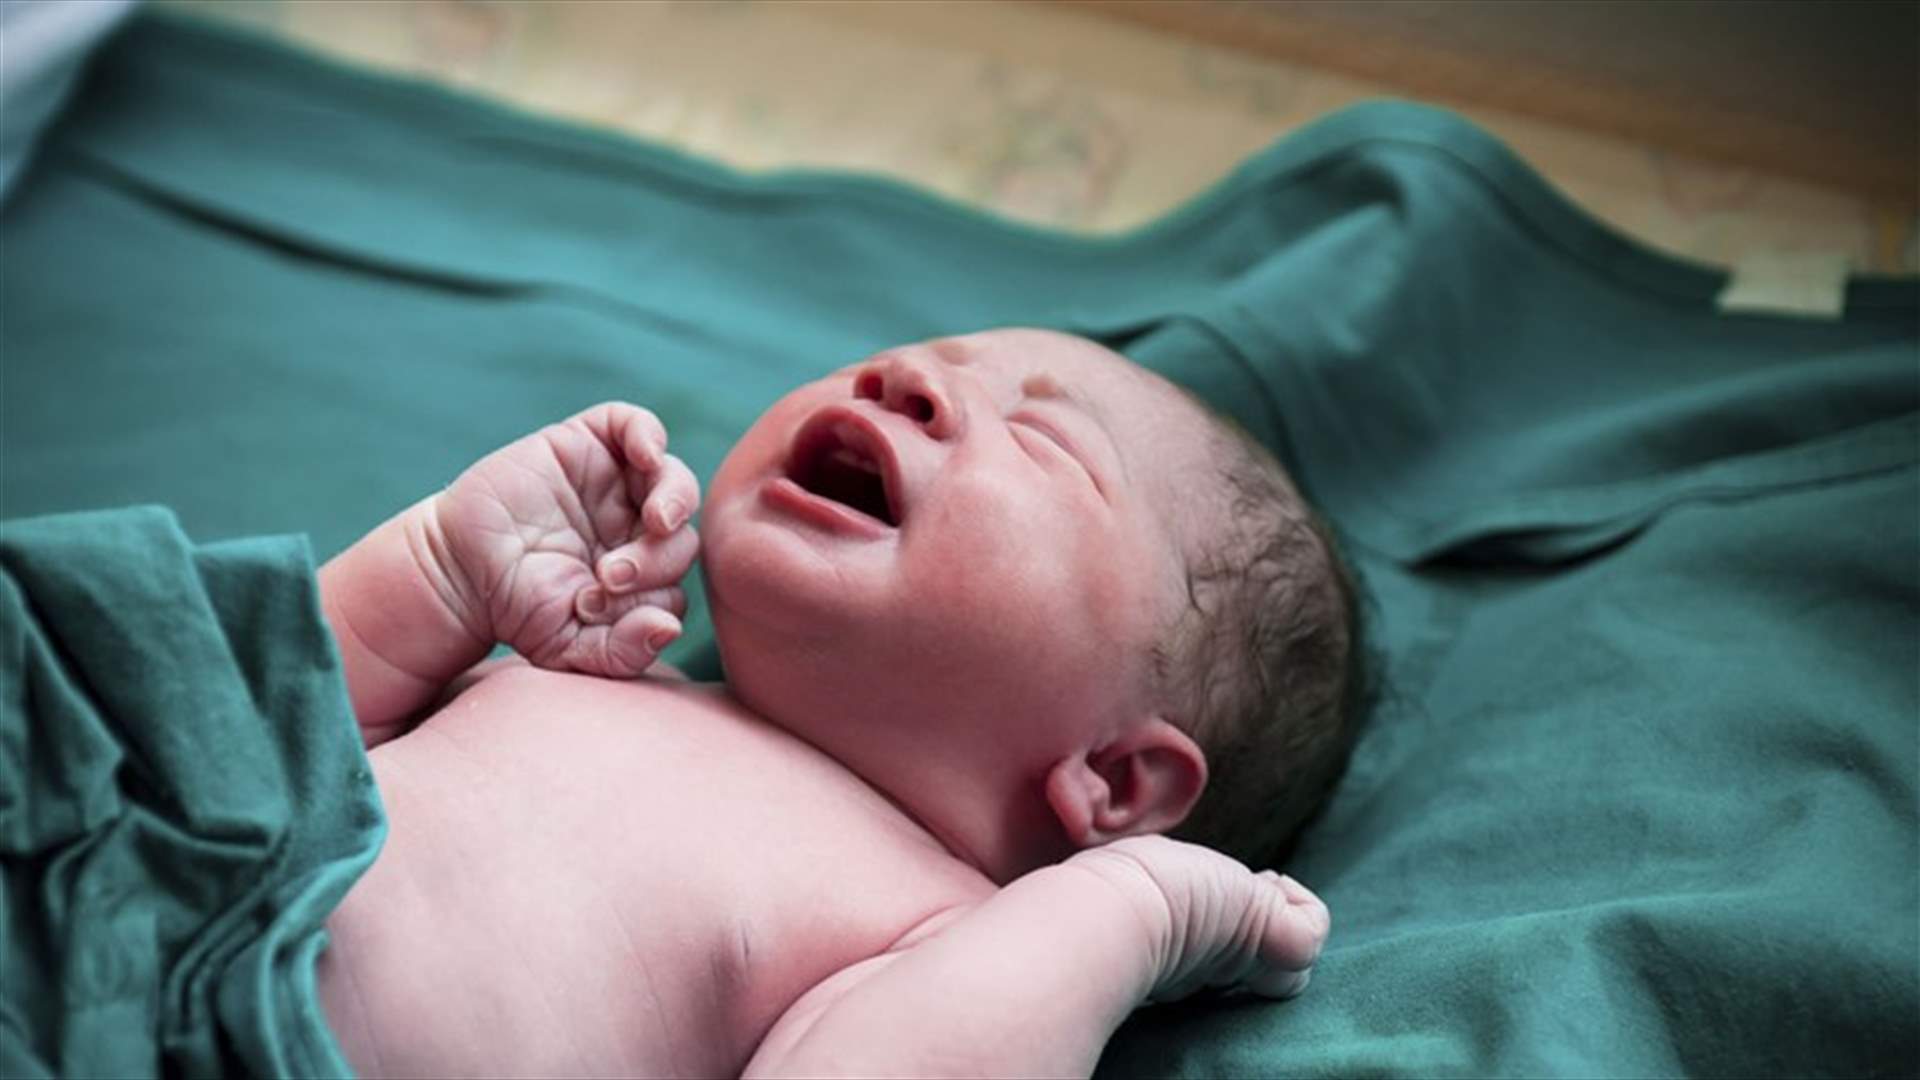 في احد مستشفيات لبنان:ولادة 34 طفلا في يوم واحد (صور)